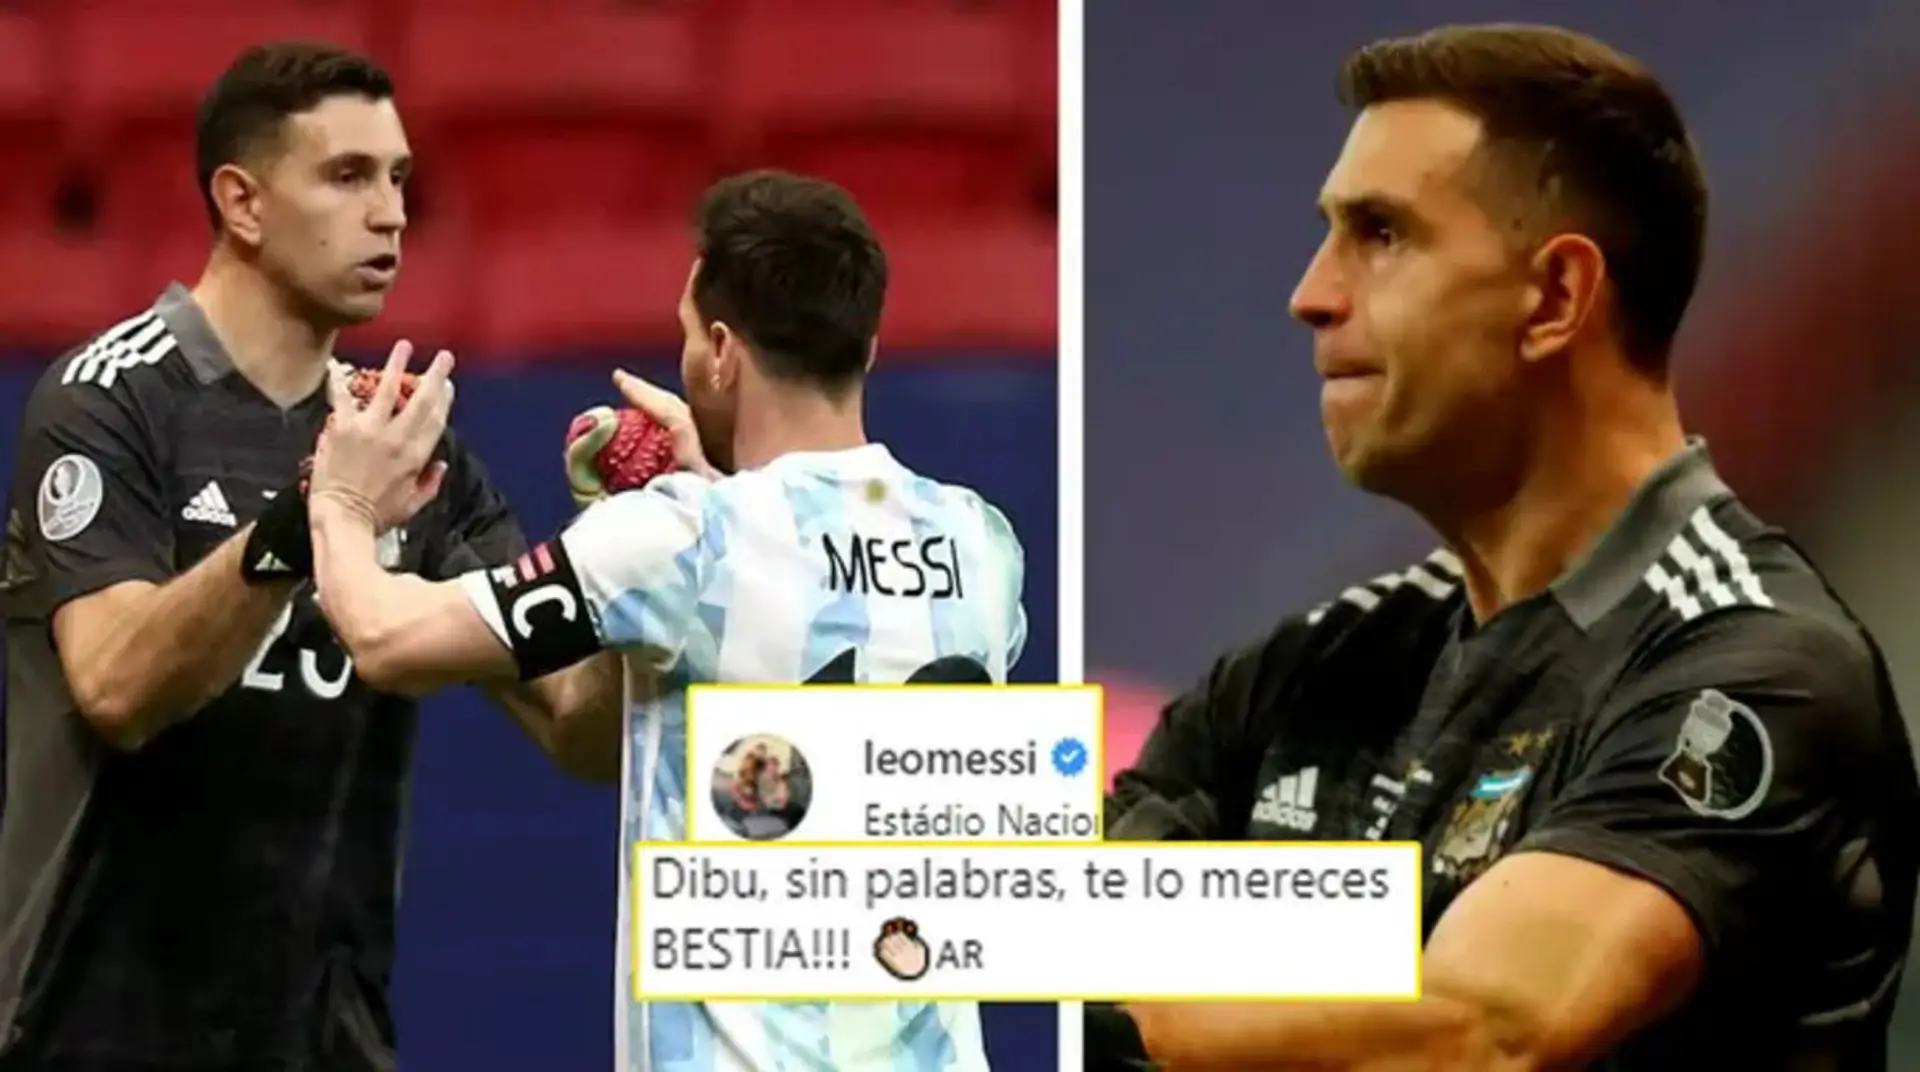 'Quiero morir por el': Emi Martínez revela cómo reaccionó cuando Messi lo llamó una 'bestia' en Instagram